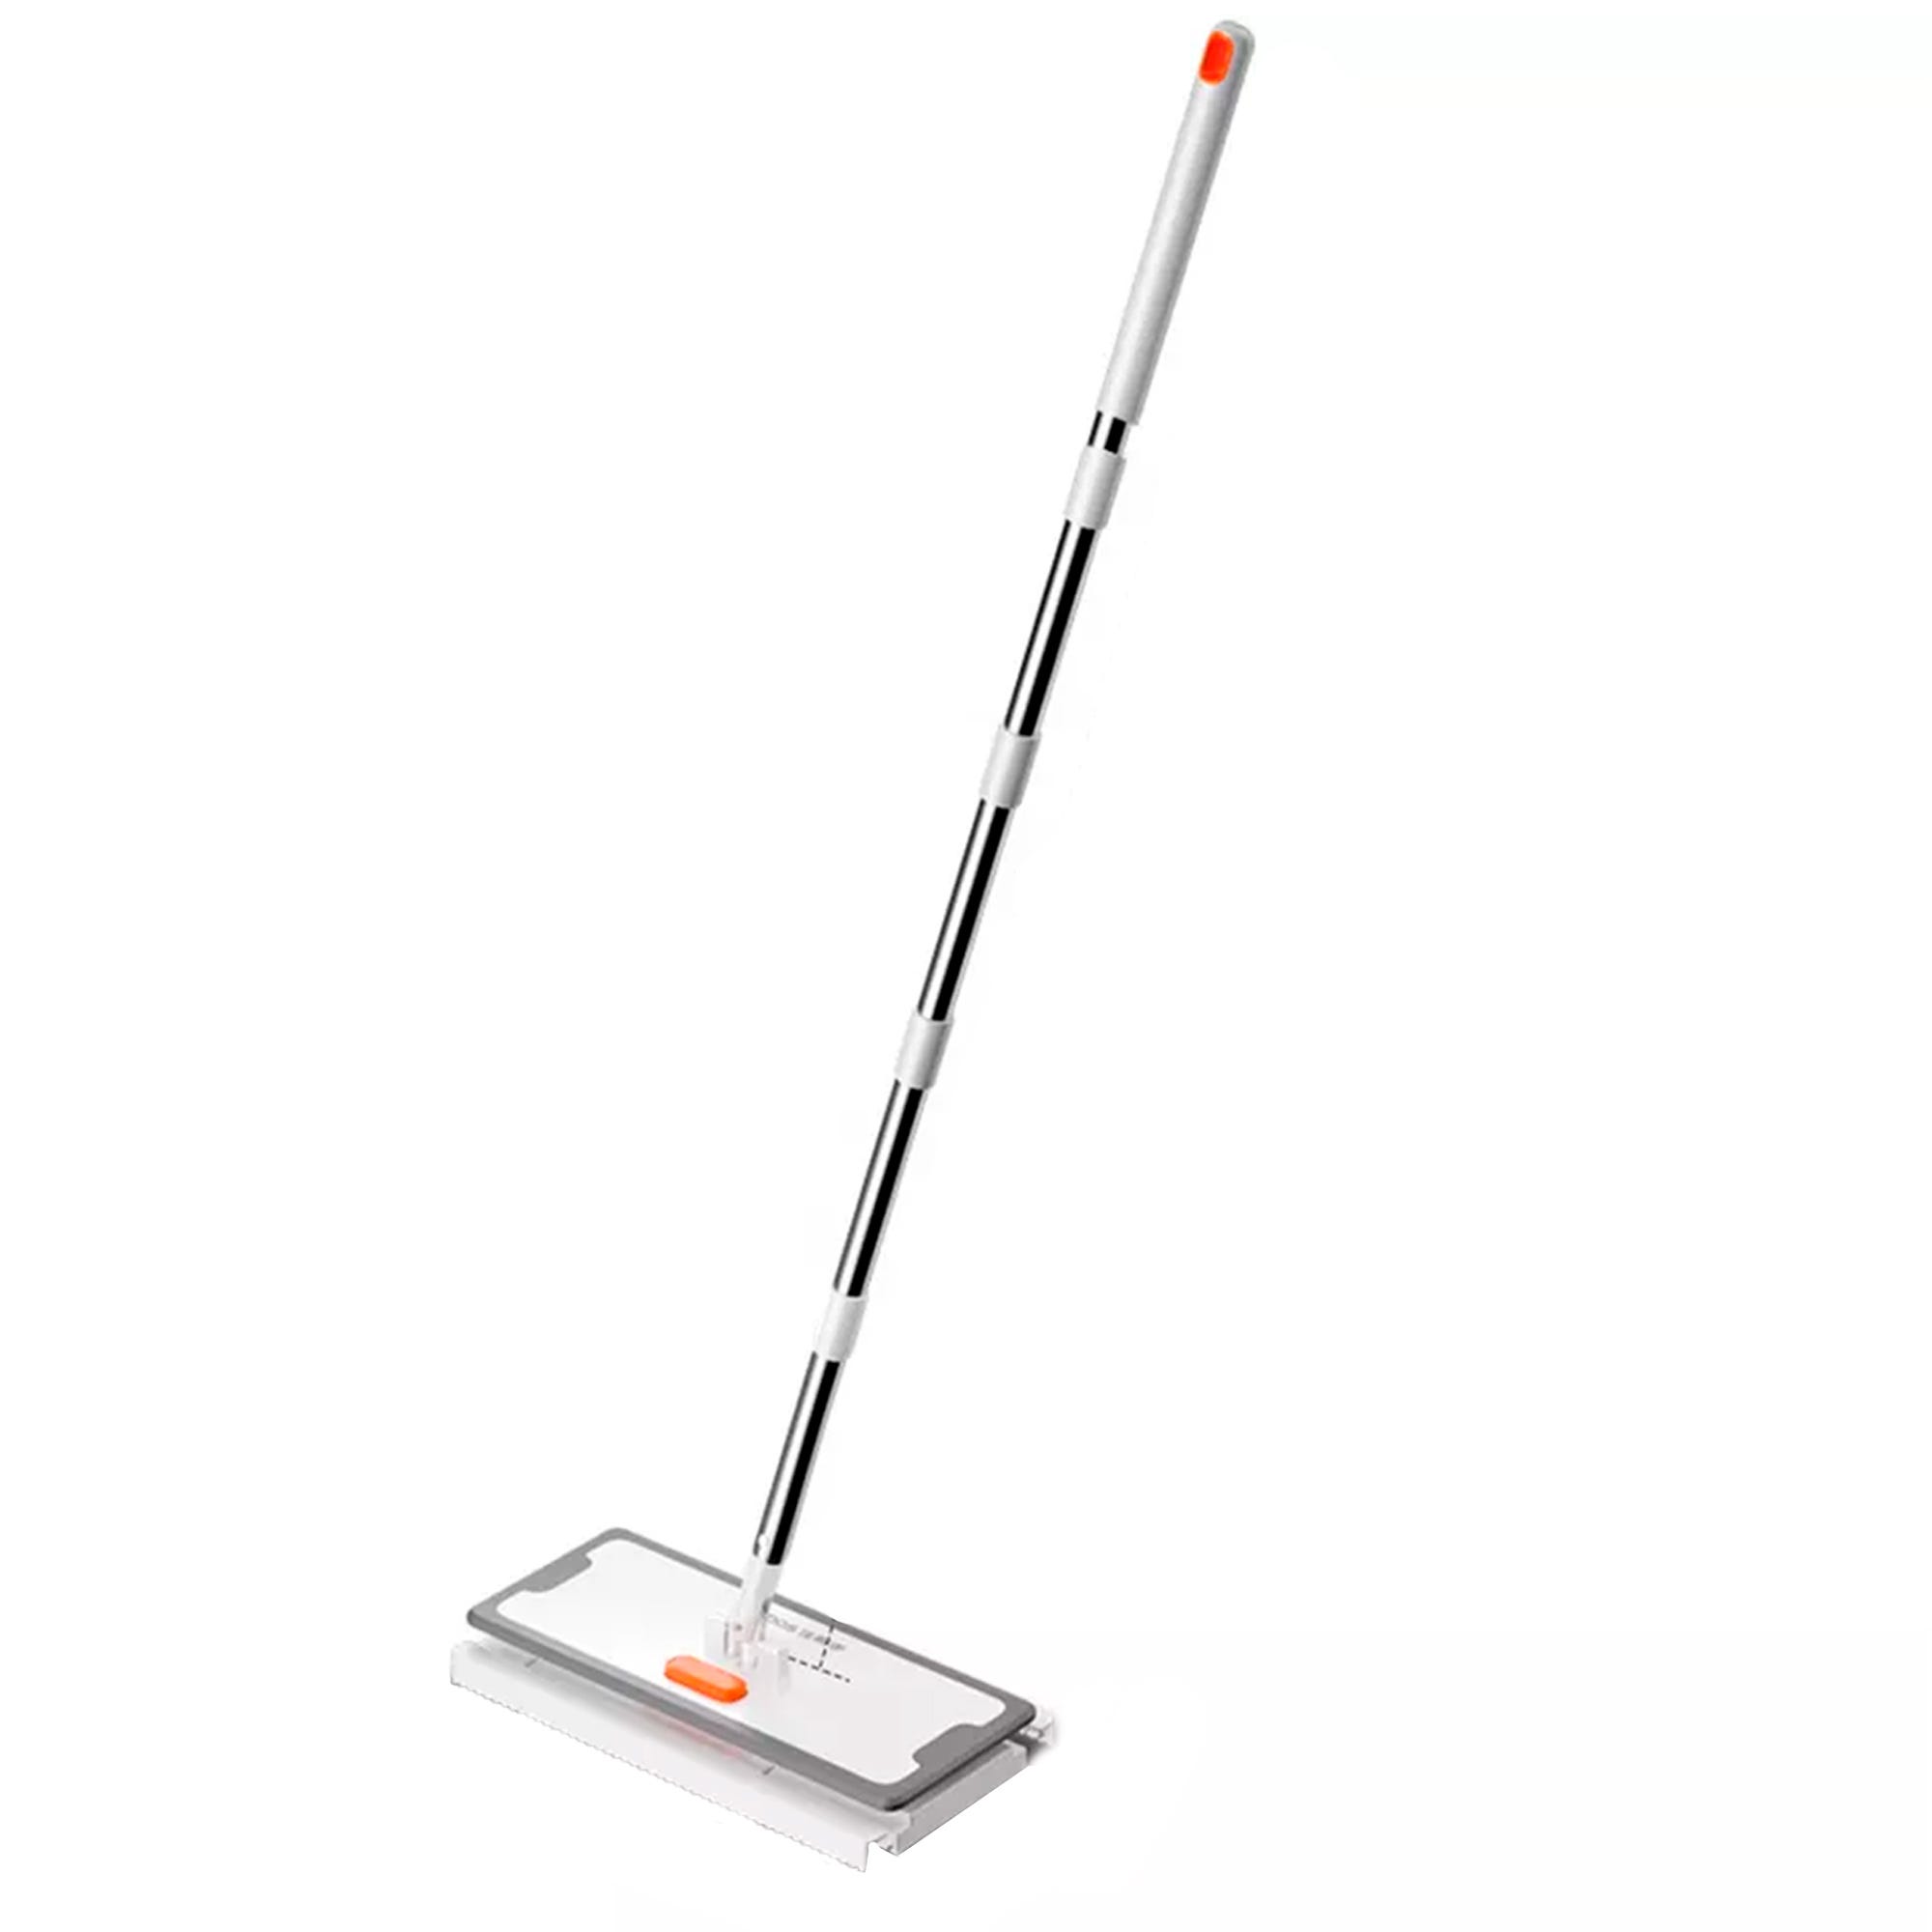 JOYBOS Mop - mocio piatto rotante per la pulizia dei pavimenti 2 in 1.